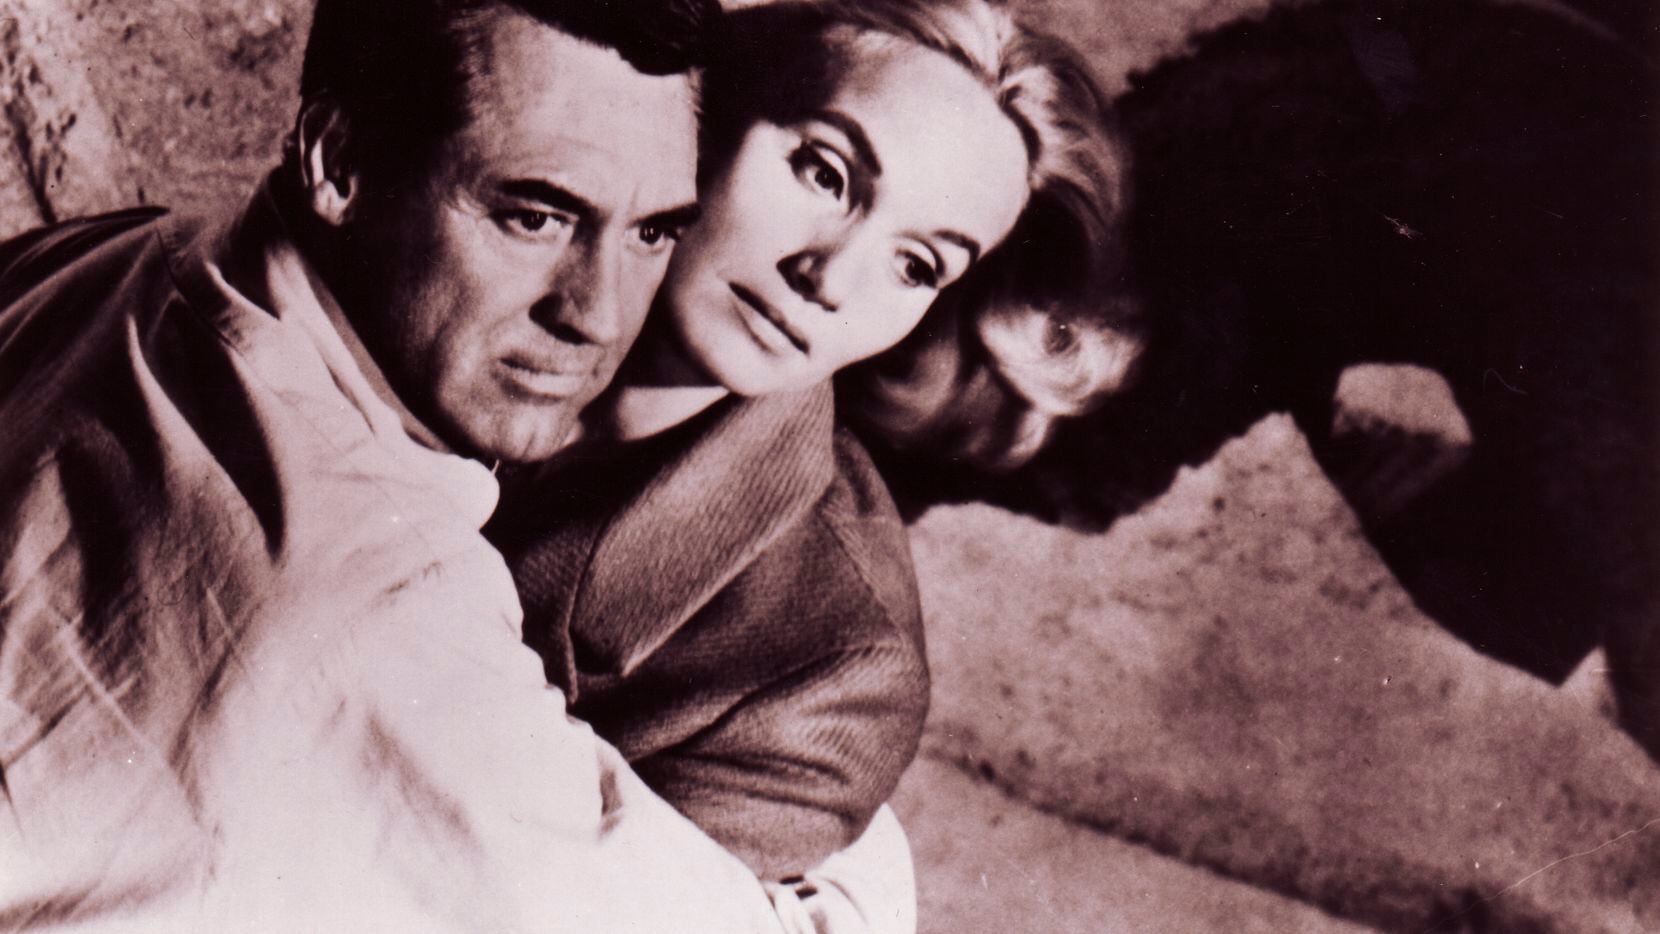 Cary Grant junto a Eva Marie Saint en la cinta 'North by Northwest', de 1959.